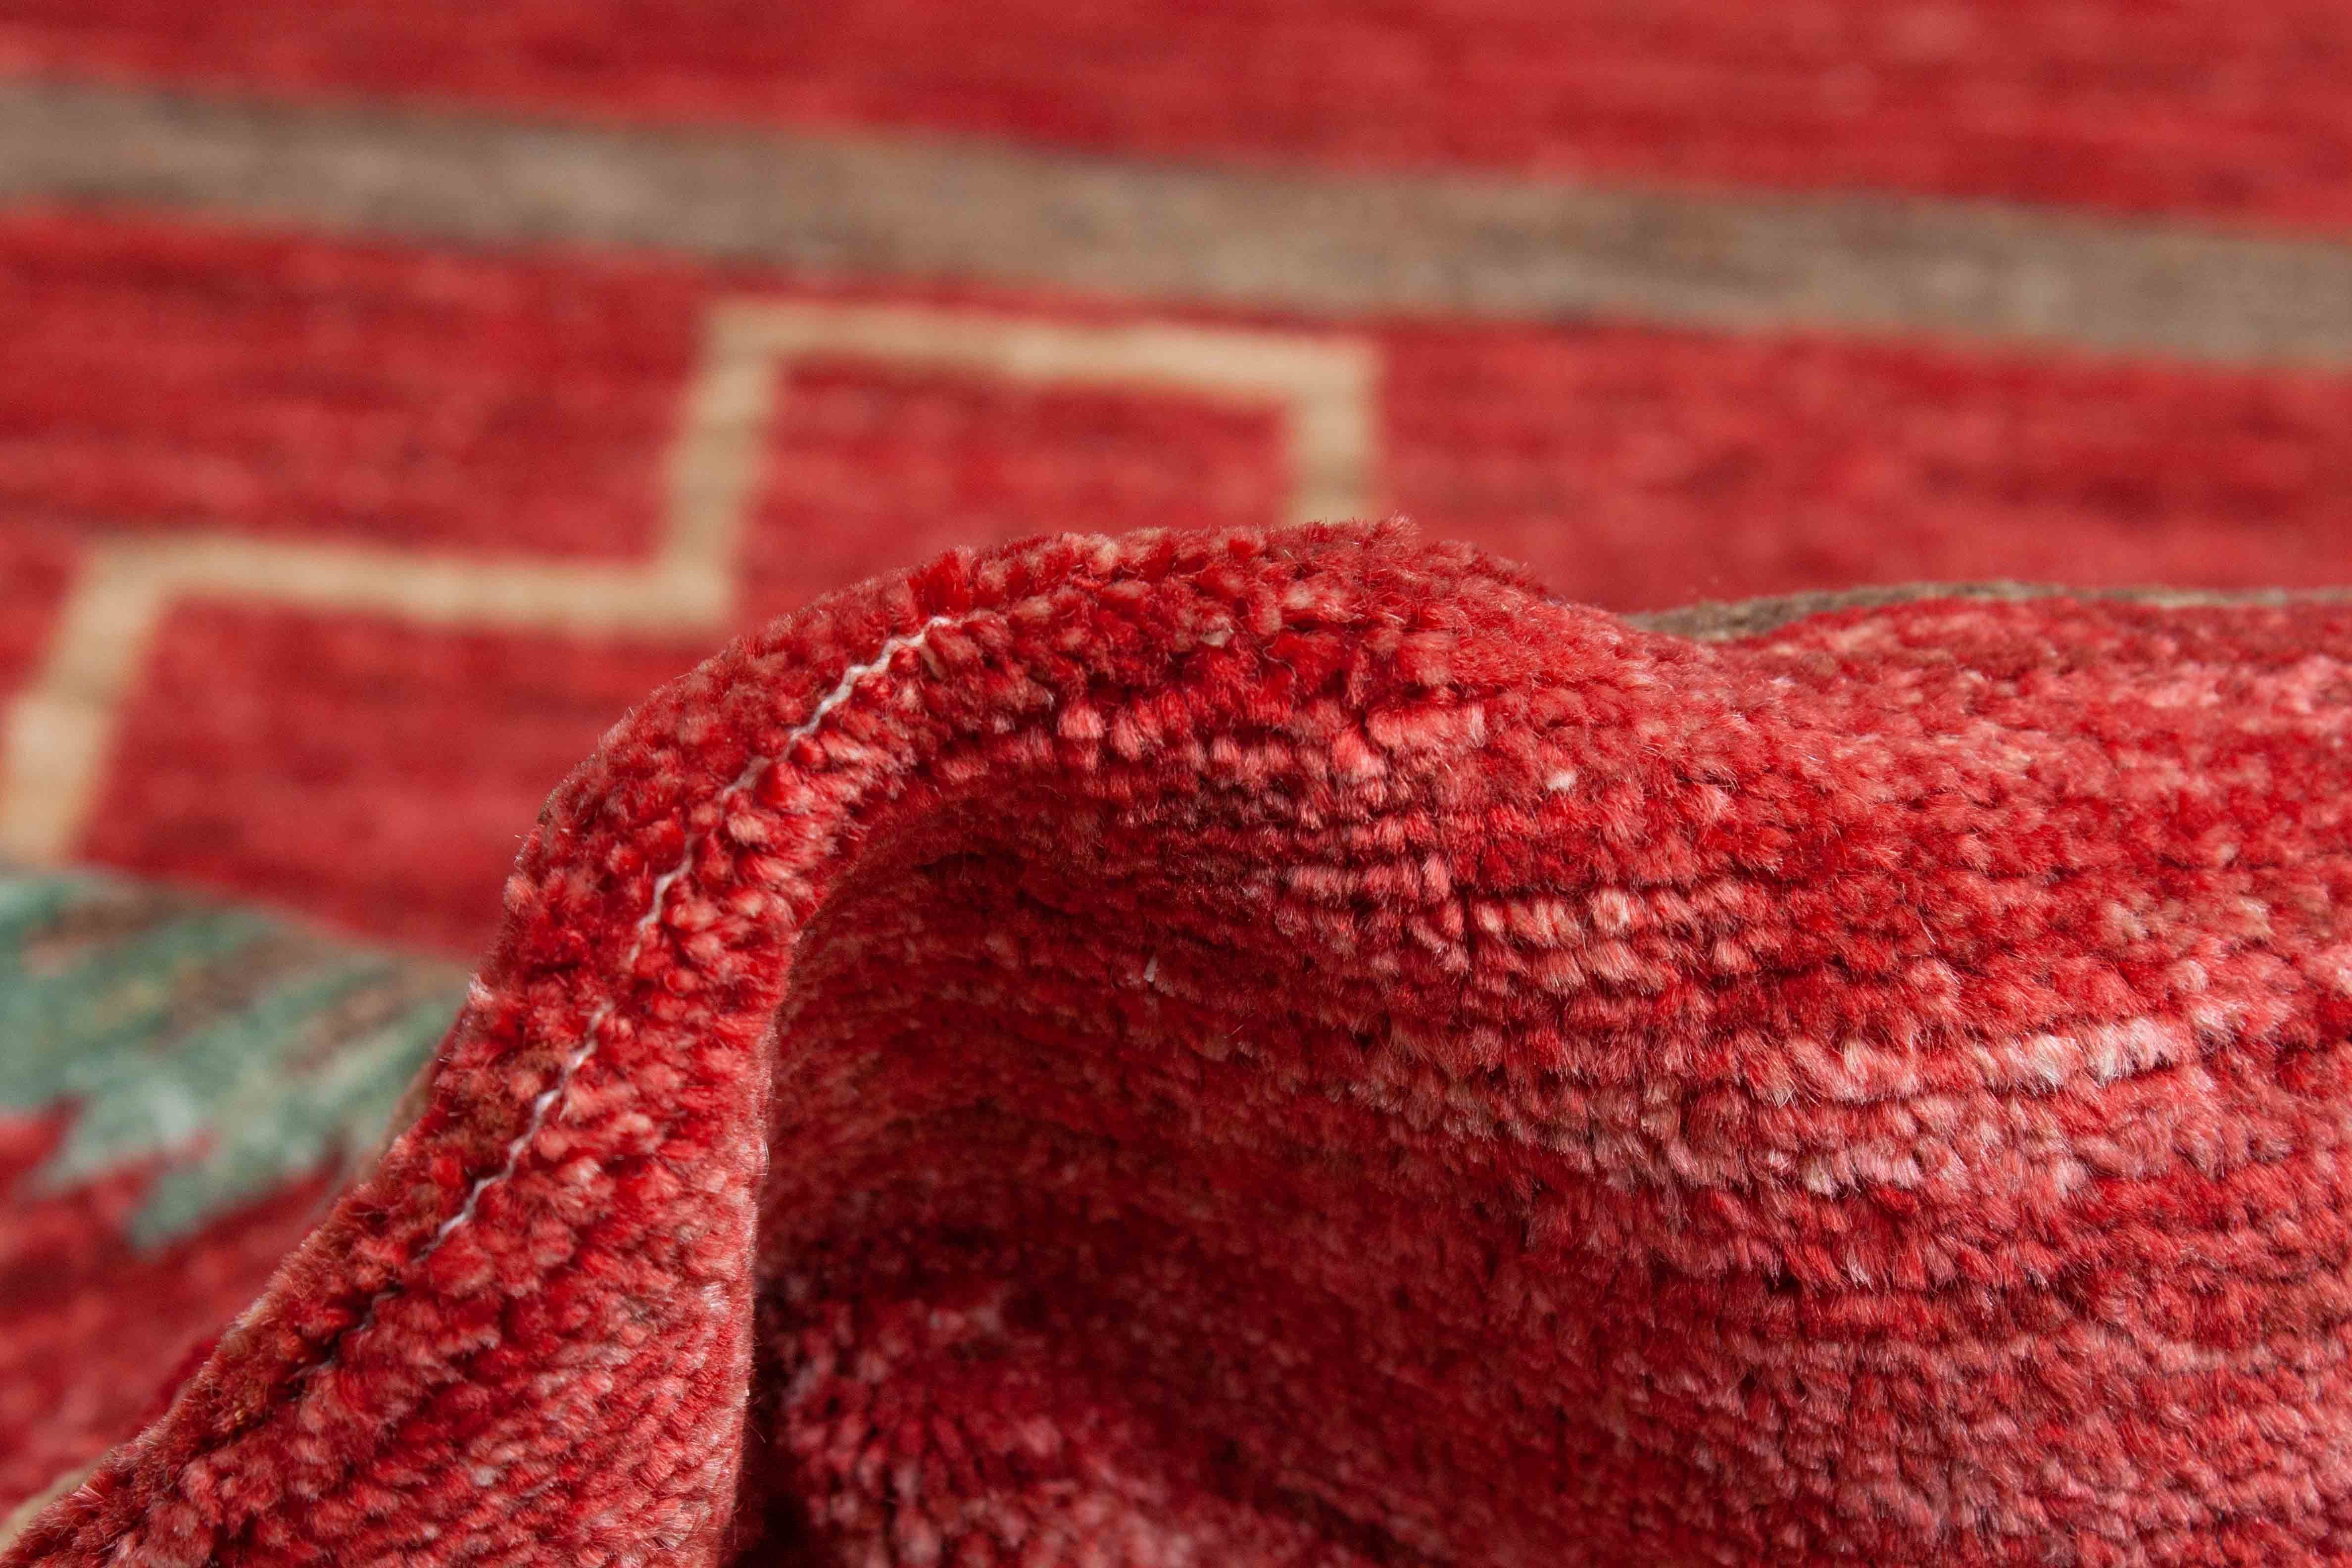 Eine Fotoaufnahme eines Ziegler Teppichs.